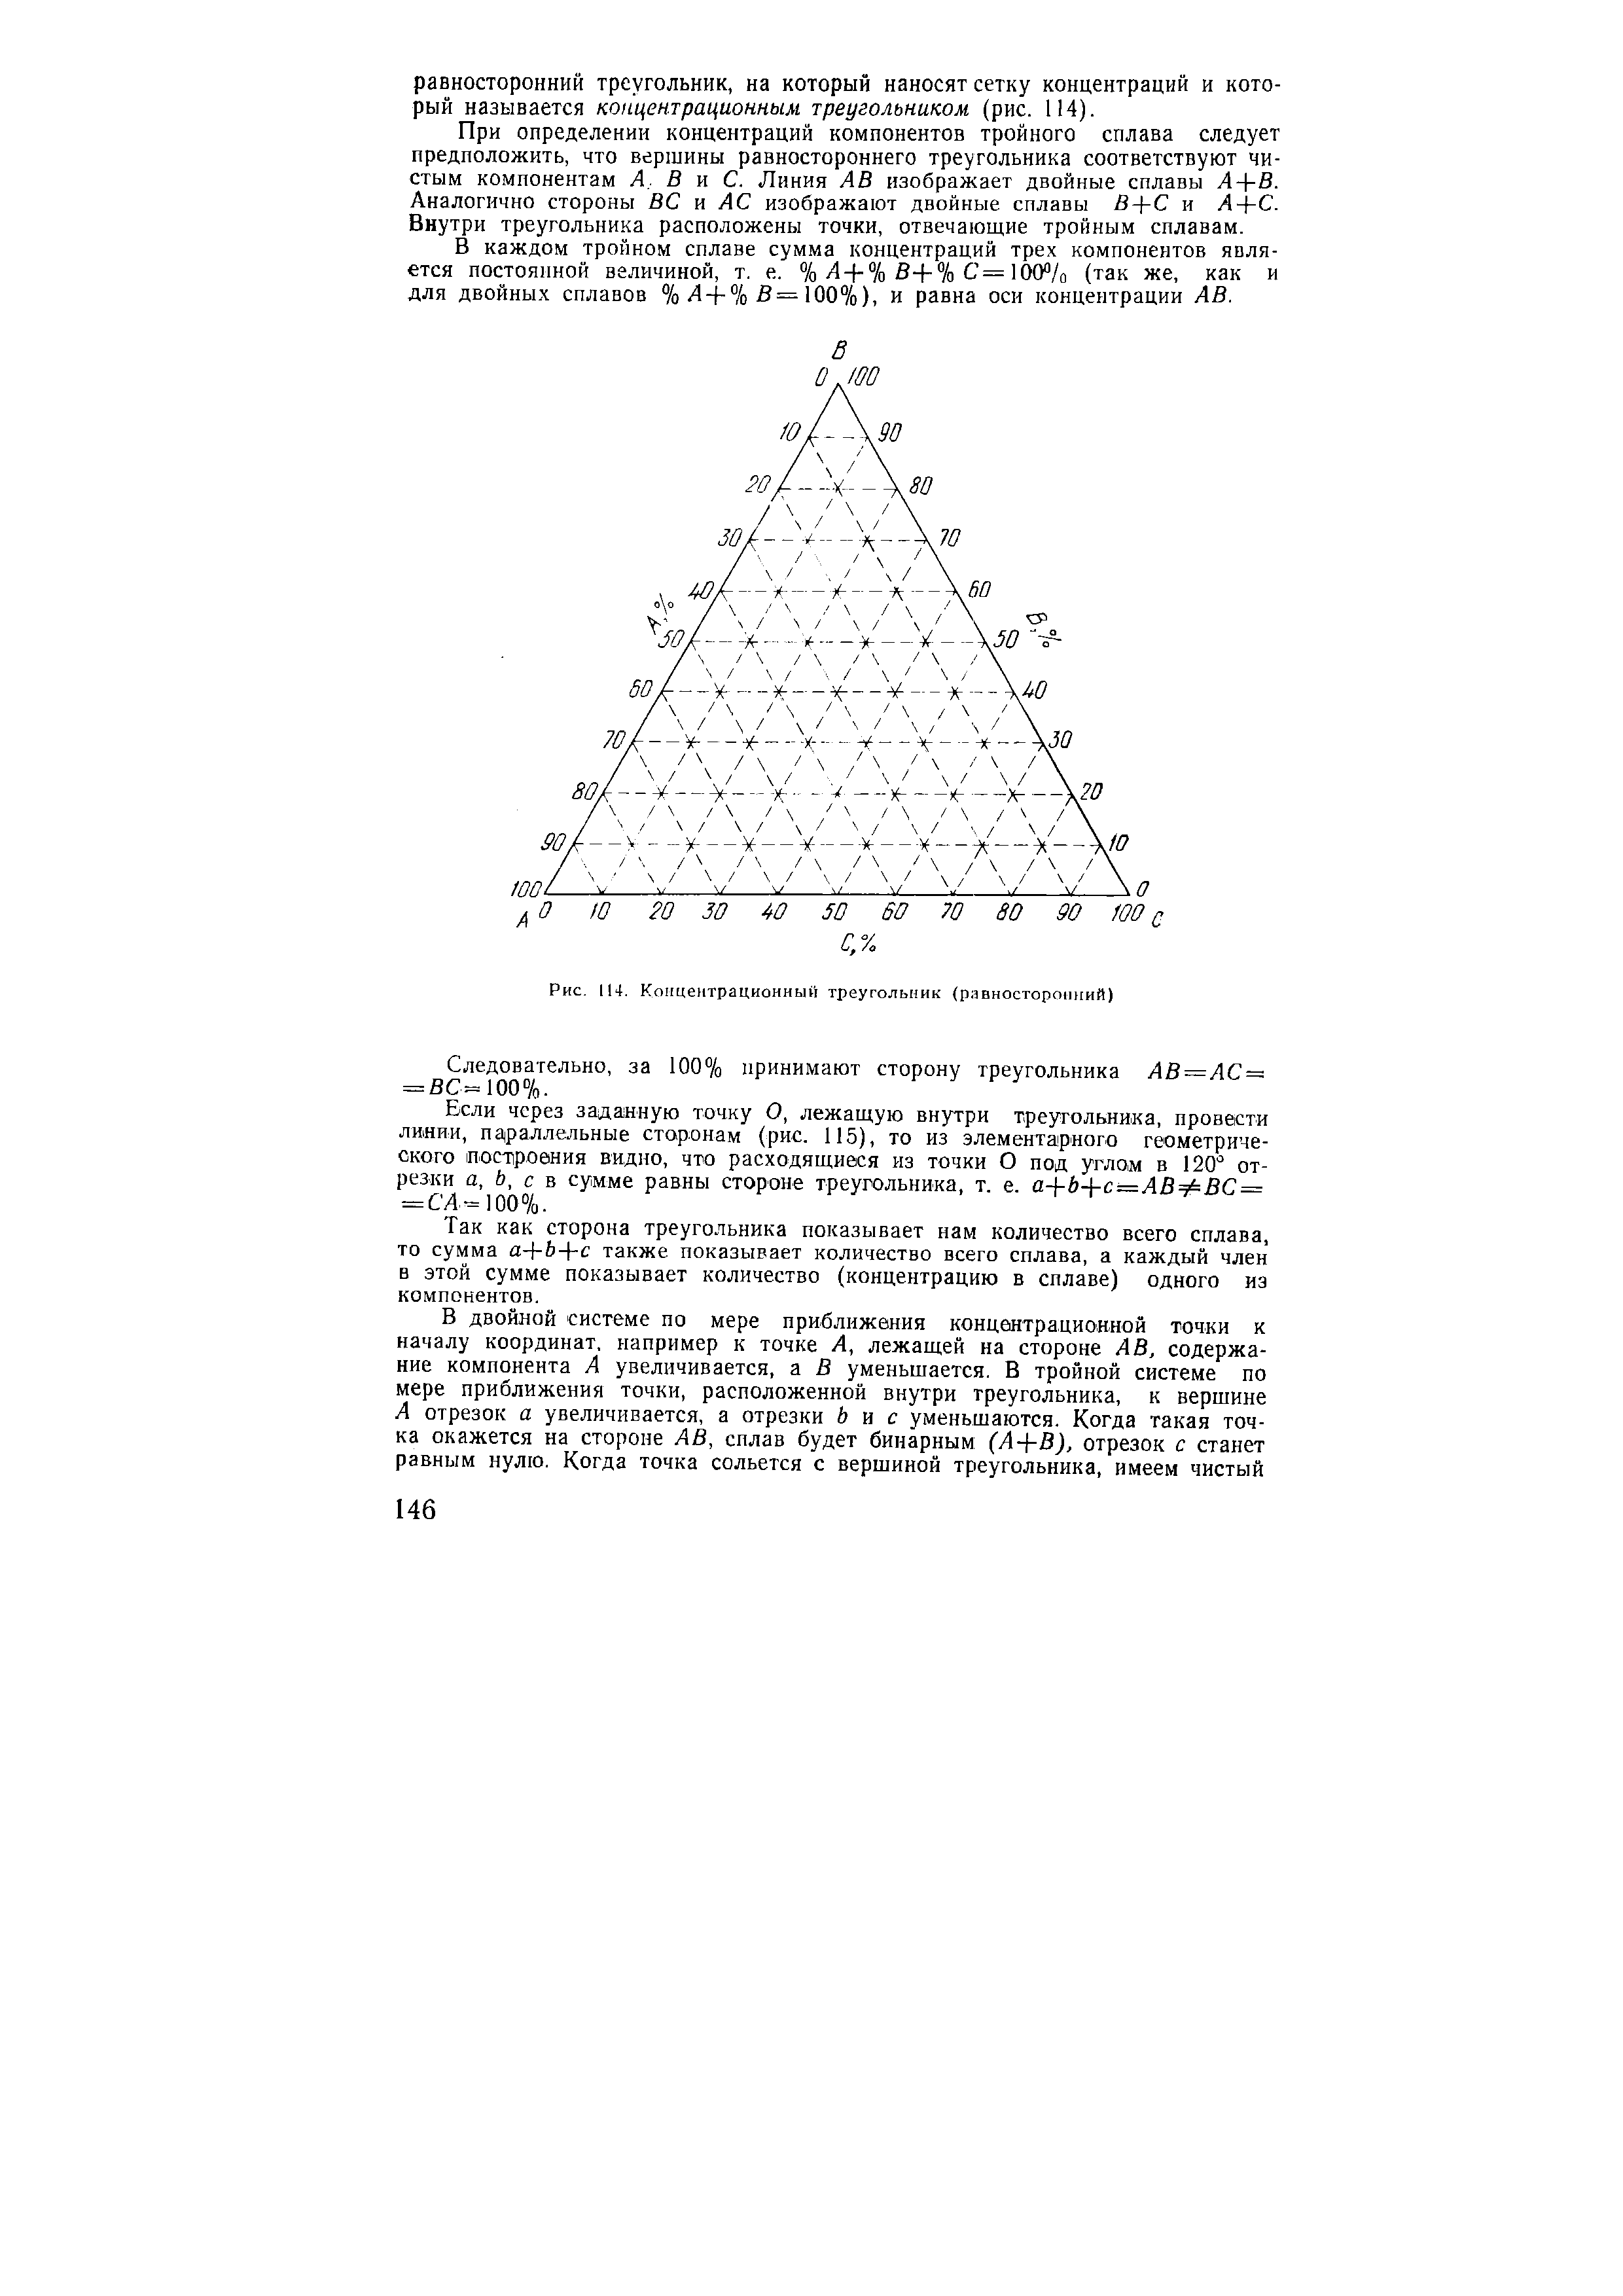 Рис. 114. Концентрационный треугольник (равносторонний)
